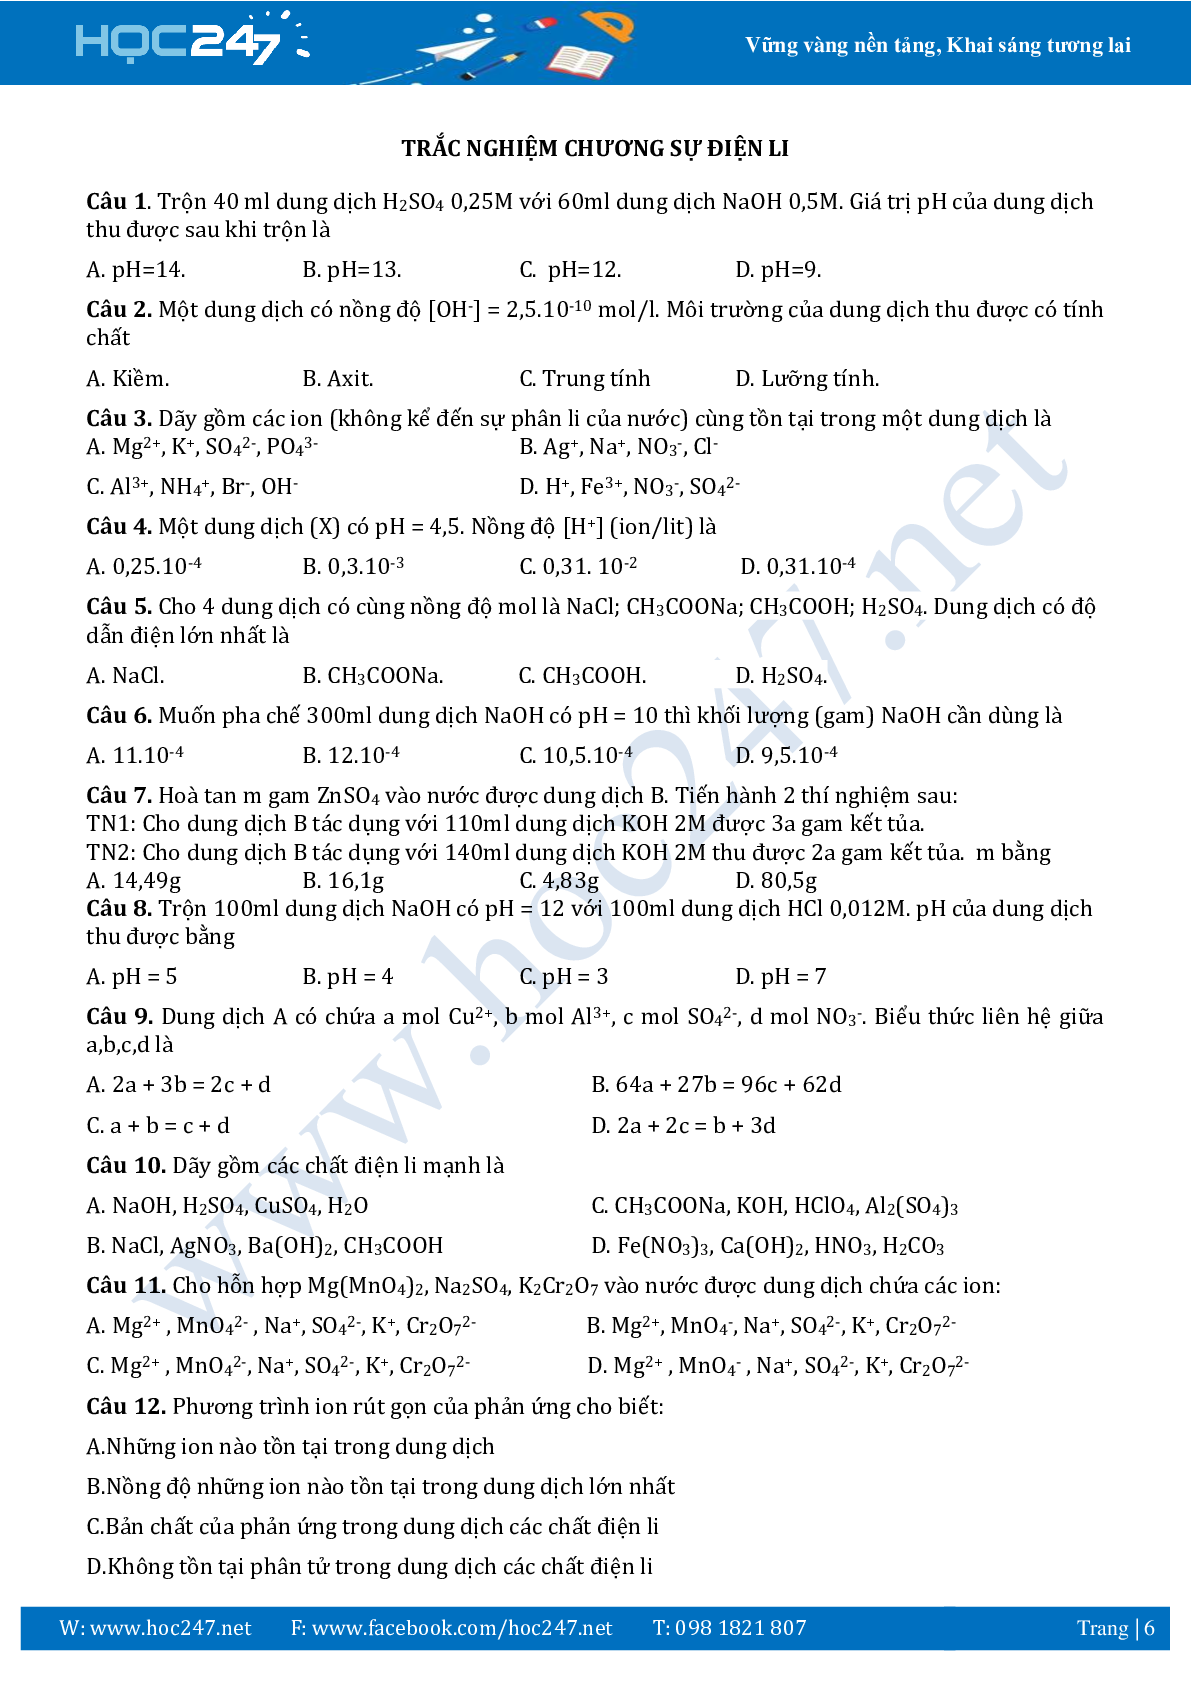 Chuyên đề Sự điện li môn hóa học lớp 11 (trang 6)